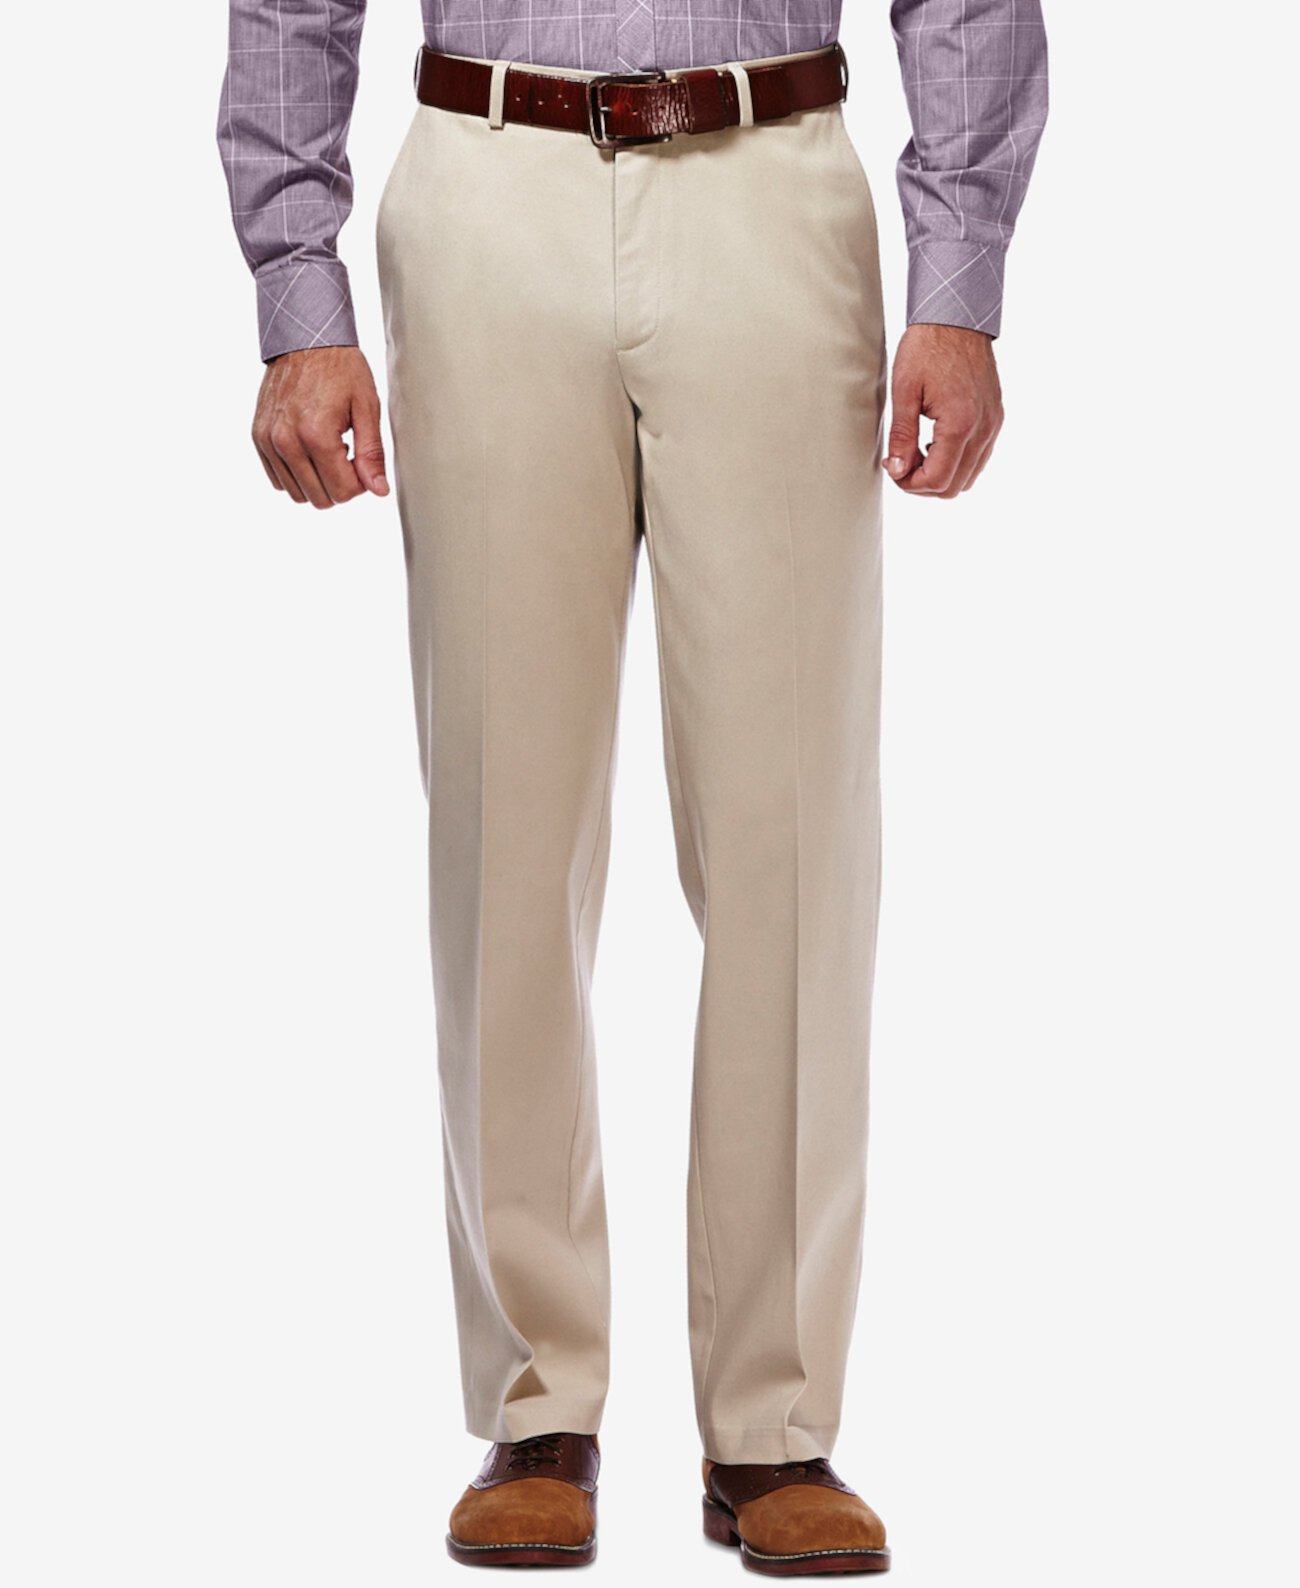 Мужские брюки премиум-класса цвета хаки классического кроя с плоской передней частью и скрытой расширяющейся талией HAGGAR